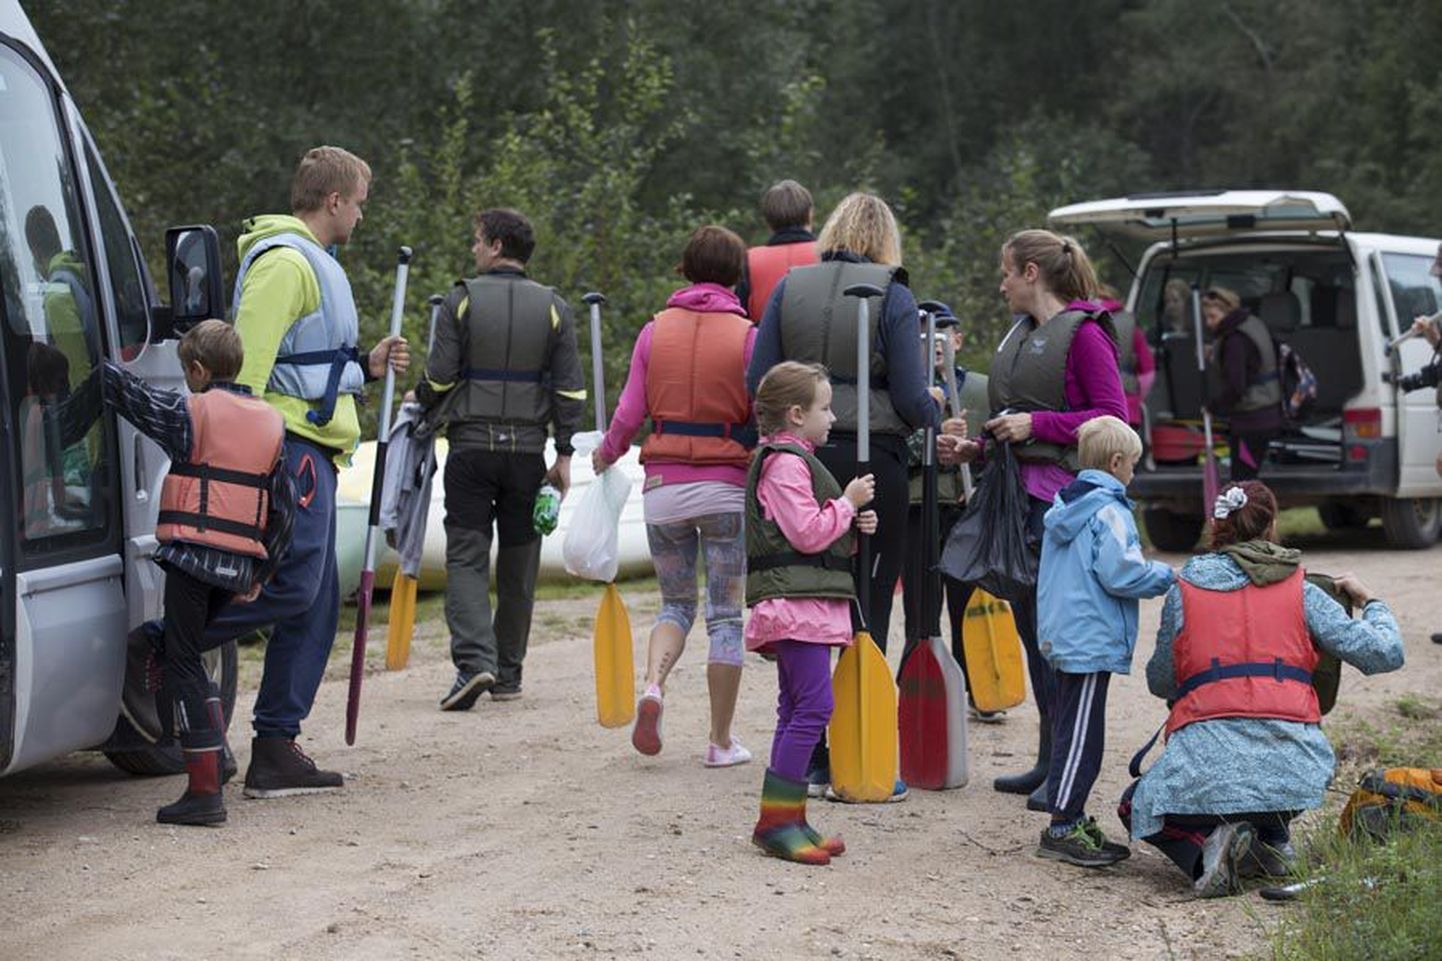 Pühapäevasel matkapäeval Soomaal läks 22 inimest kanuudega Halliste jõele 13-kilomeetrisele teekonnale